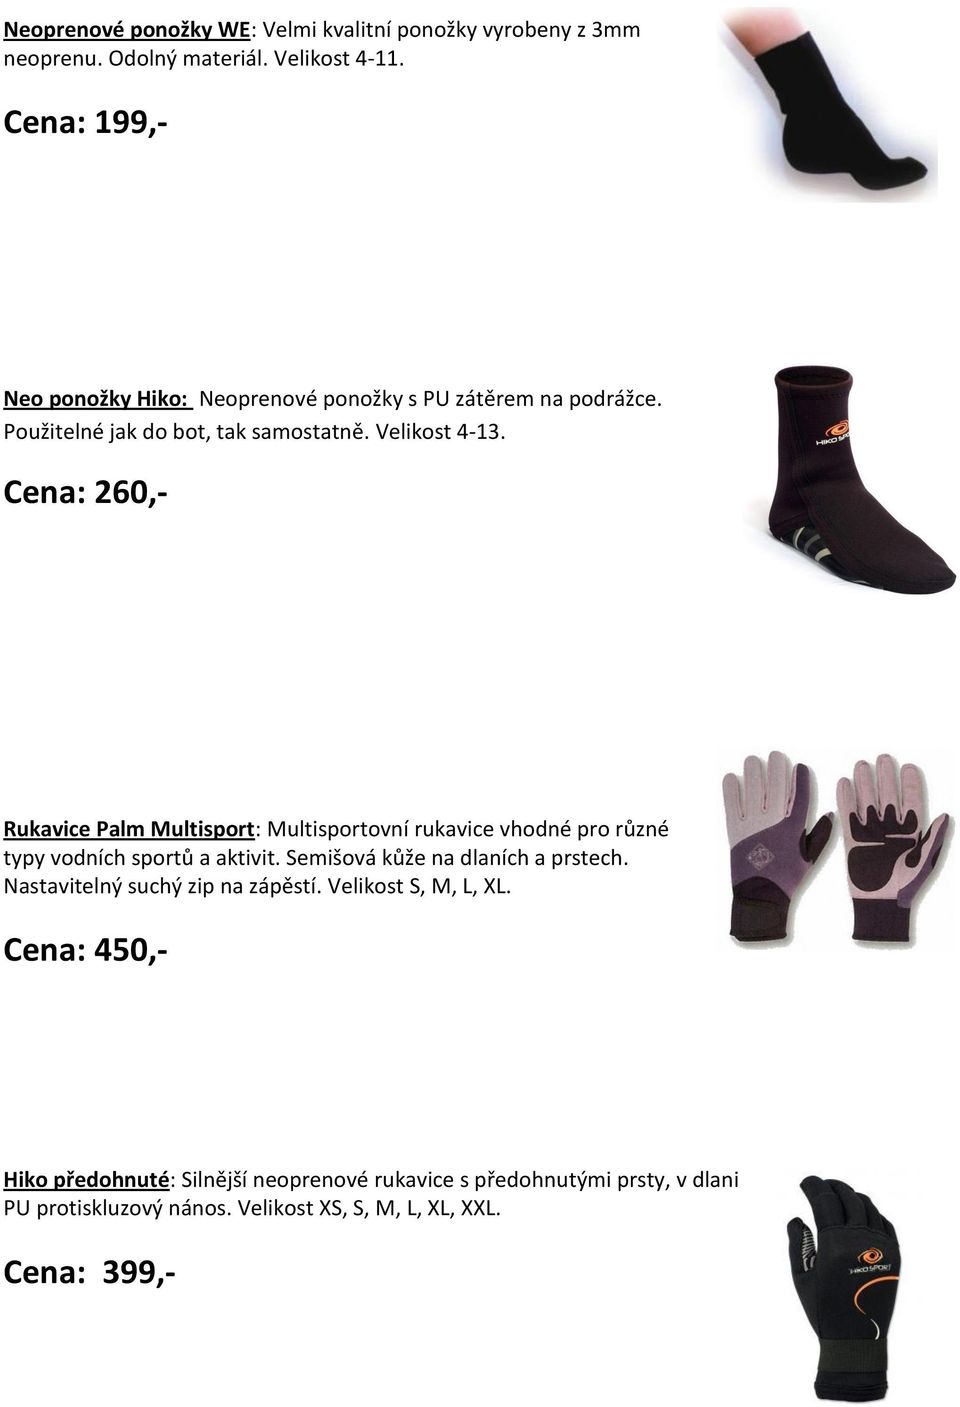 Cena: 260,- Rukavice Palm Multisport: Multisportovní rukavice vhodné pro různé typy vodních sportů a aktivit. Semišová kůže na dlaních a prstech.